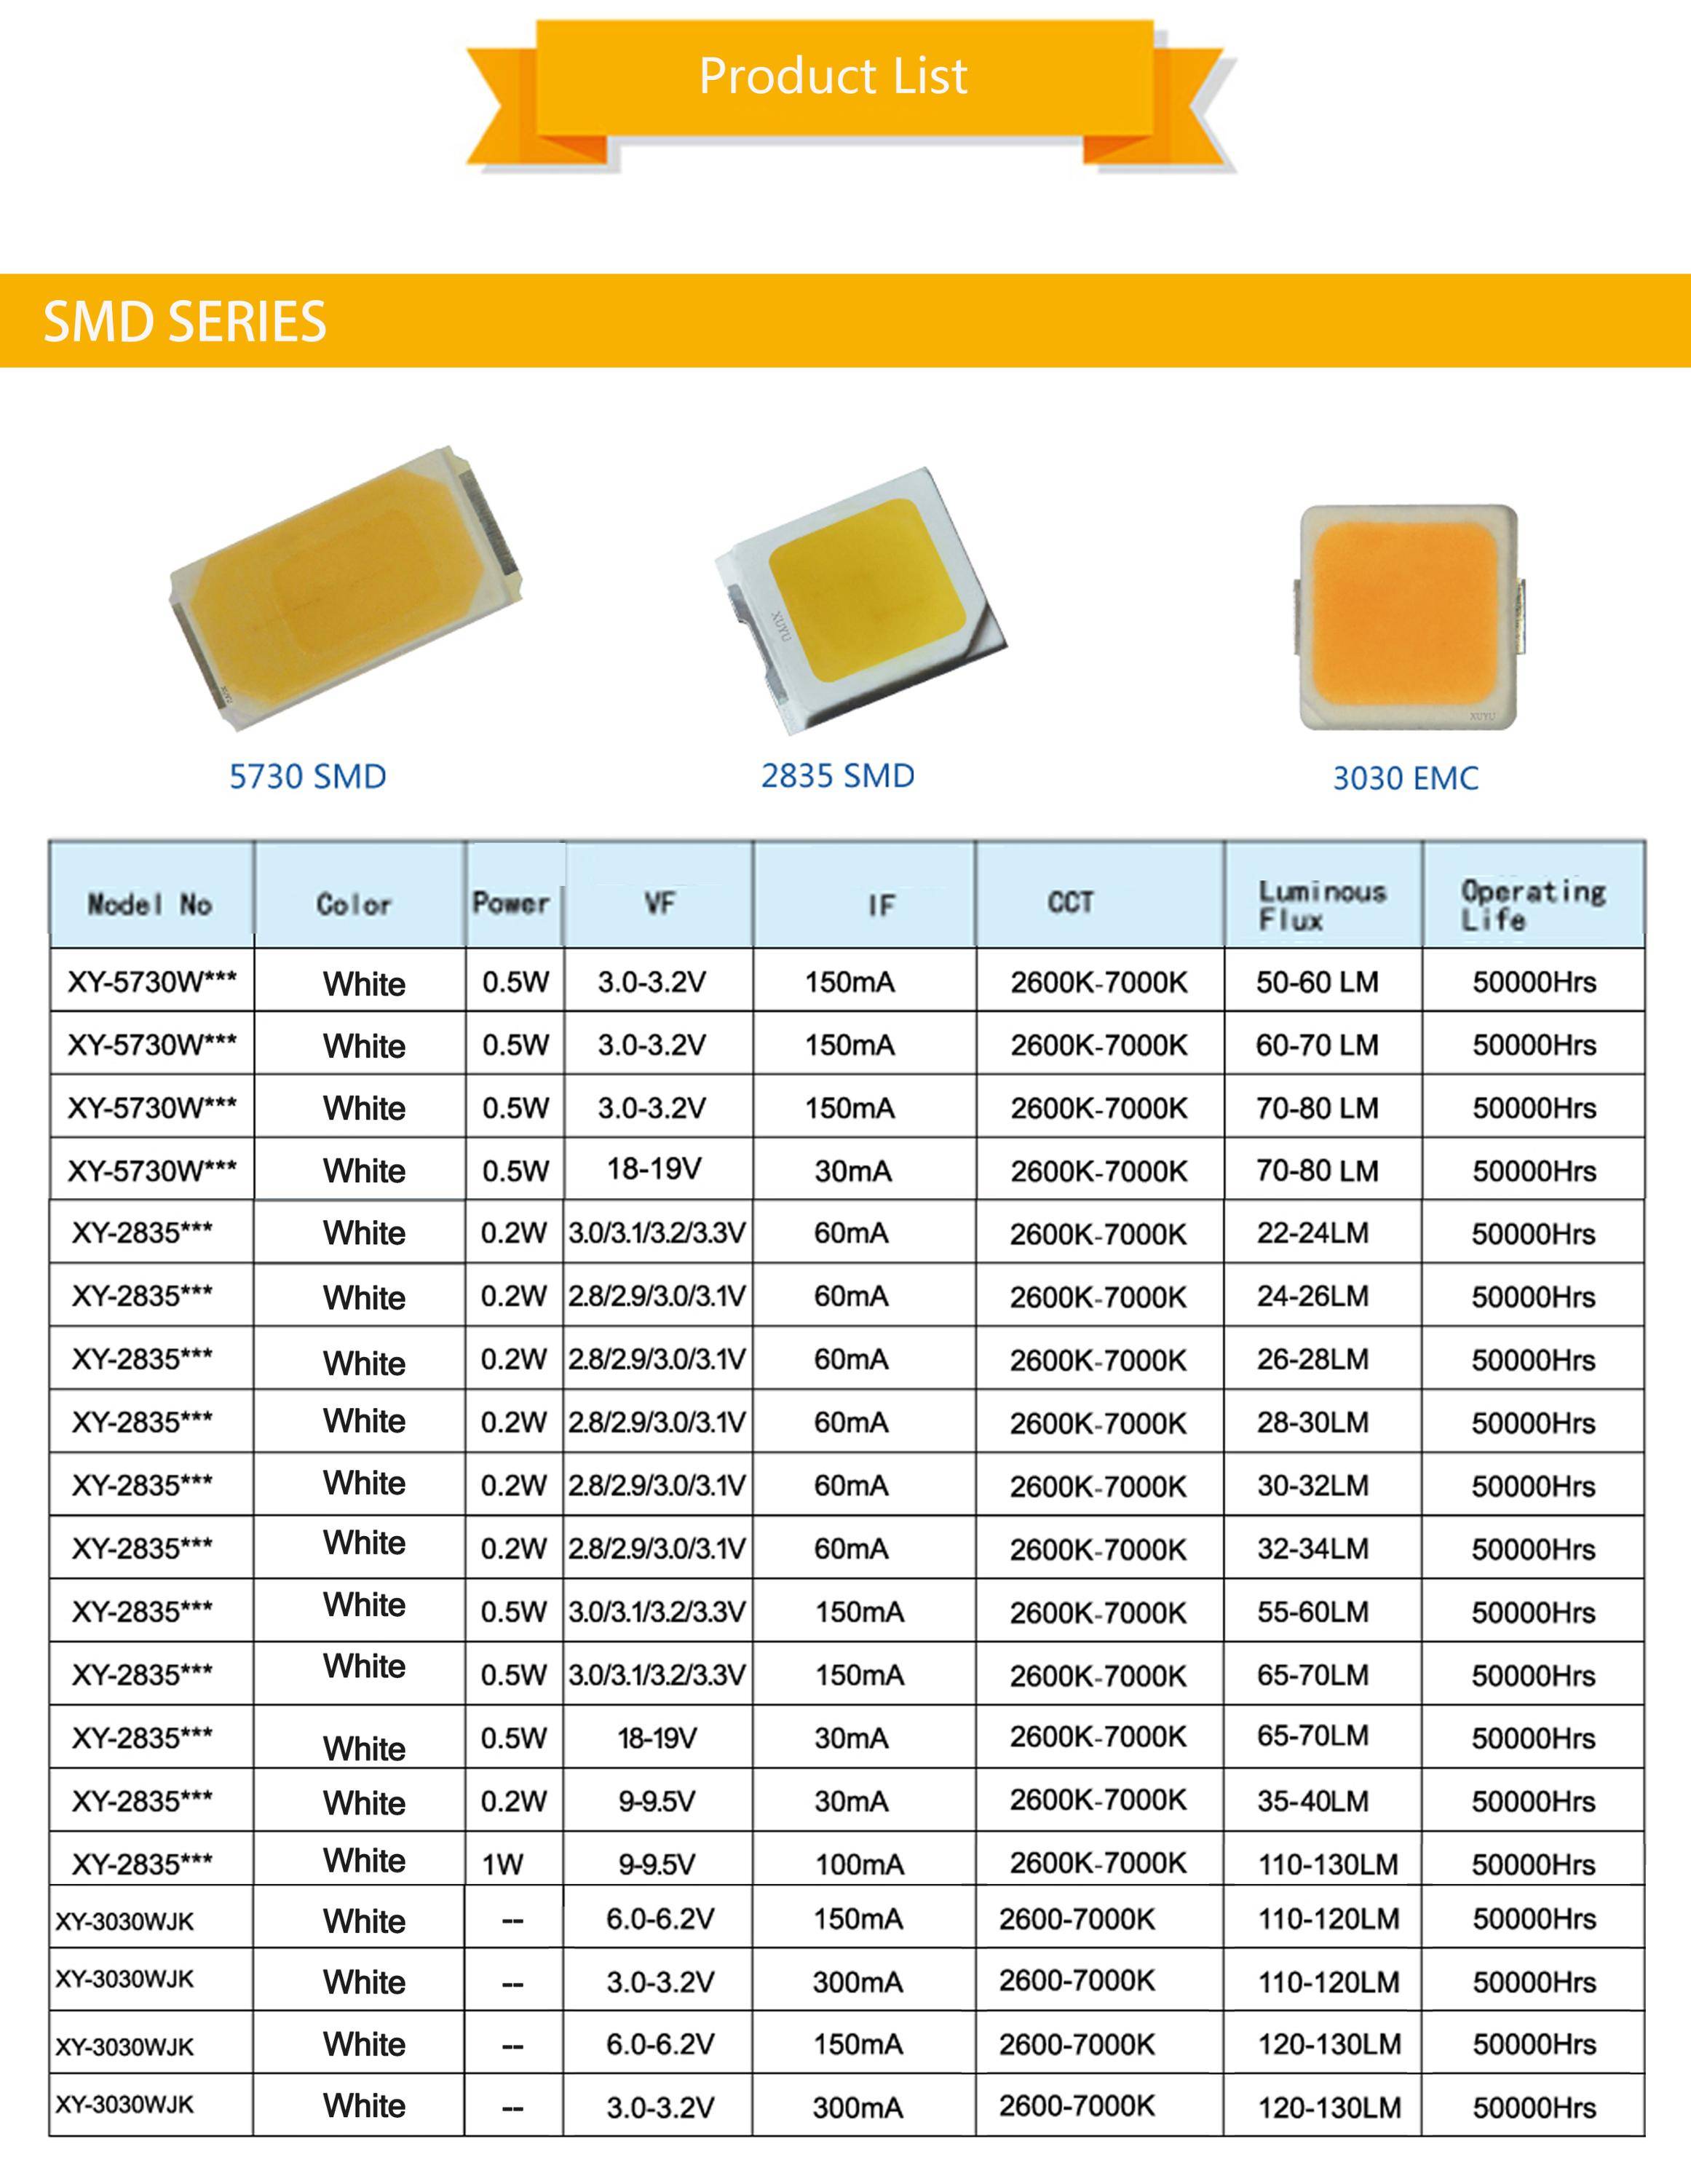 Светодиоды 5050 smd – какие лучше для монтажа 3528, 5050 или 5630